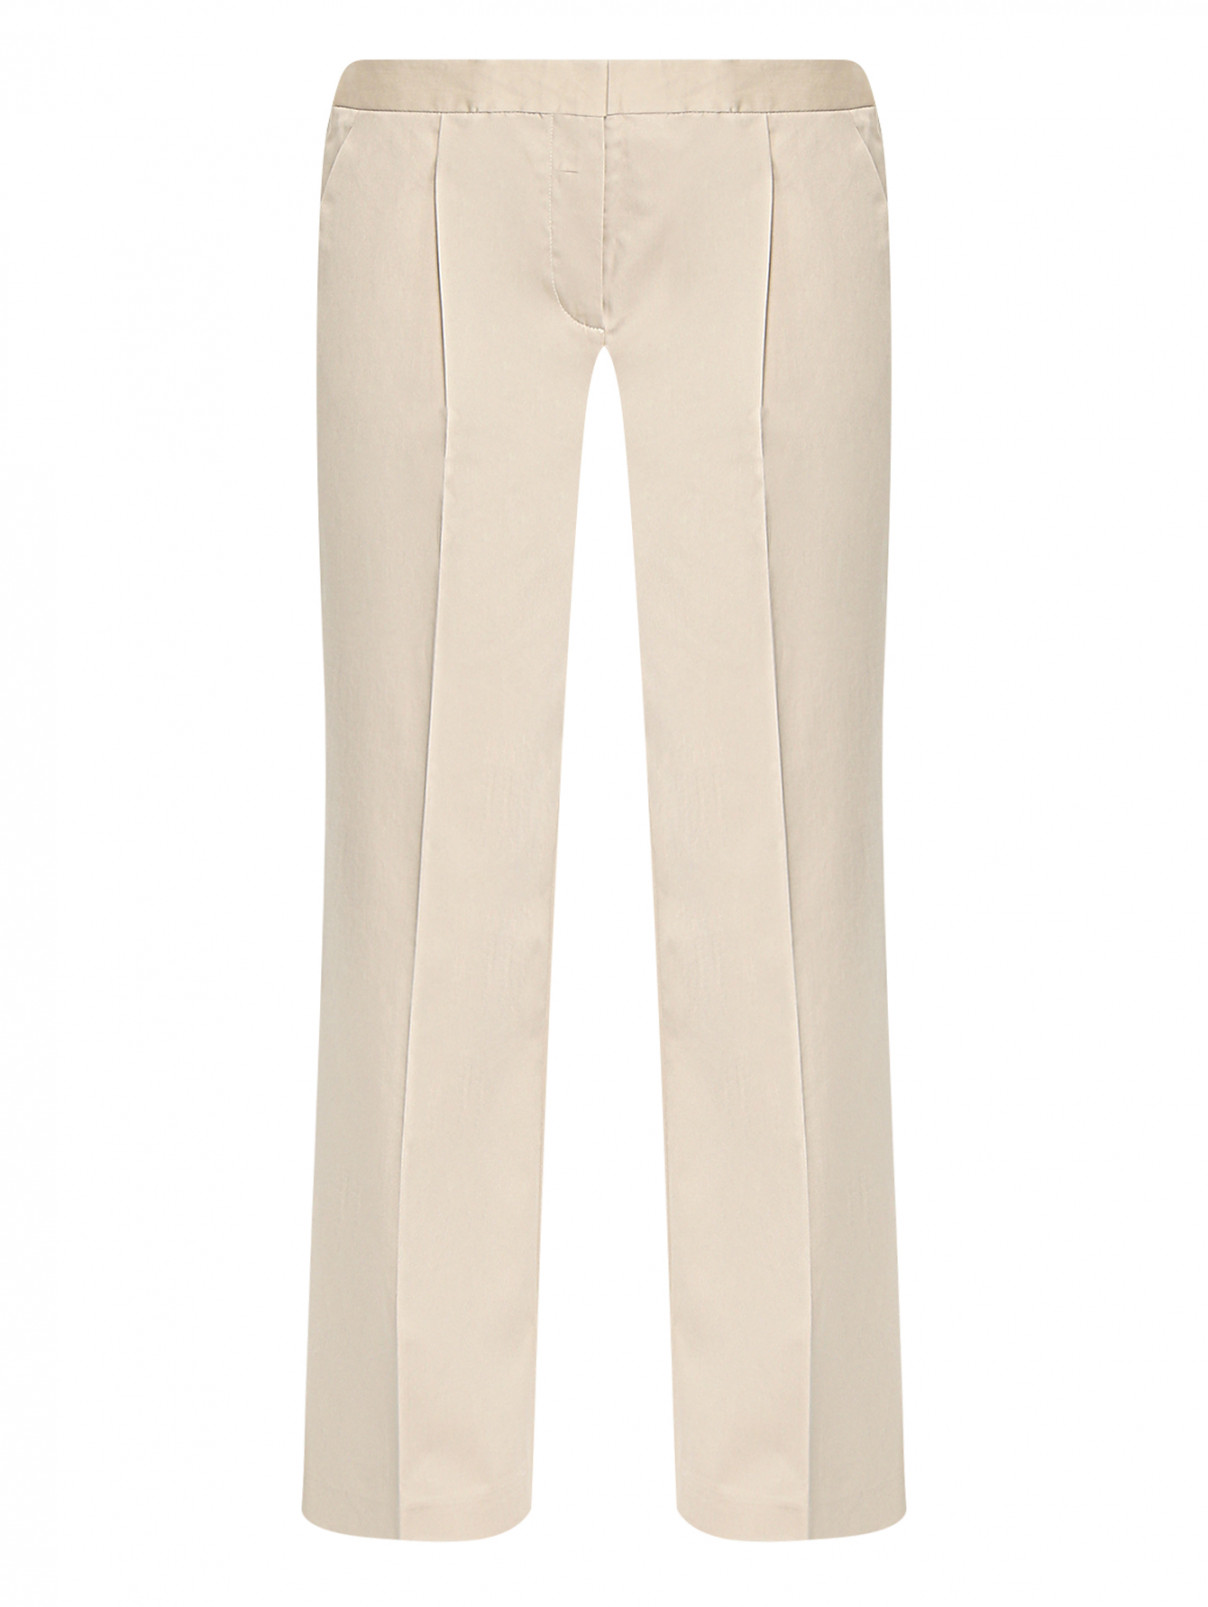 Укороченные брюки из хлопка BOUTIQUE MOSCHINO  –  Общий вид  – Цвет:  Бежевый